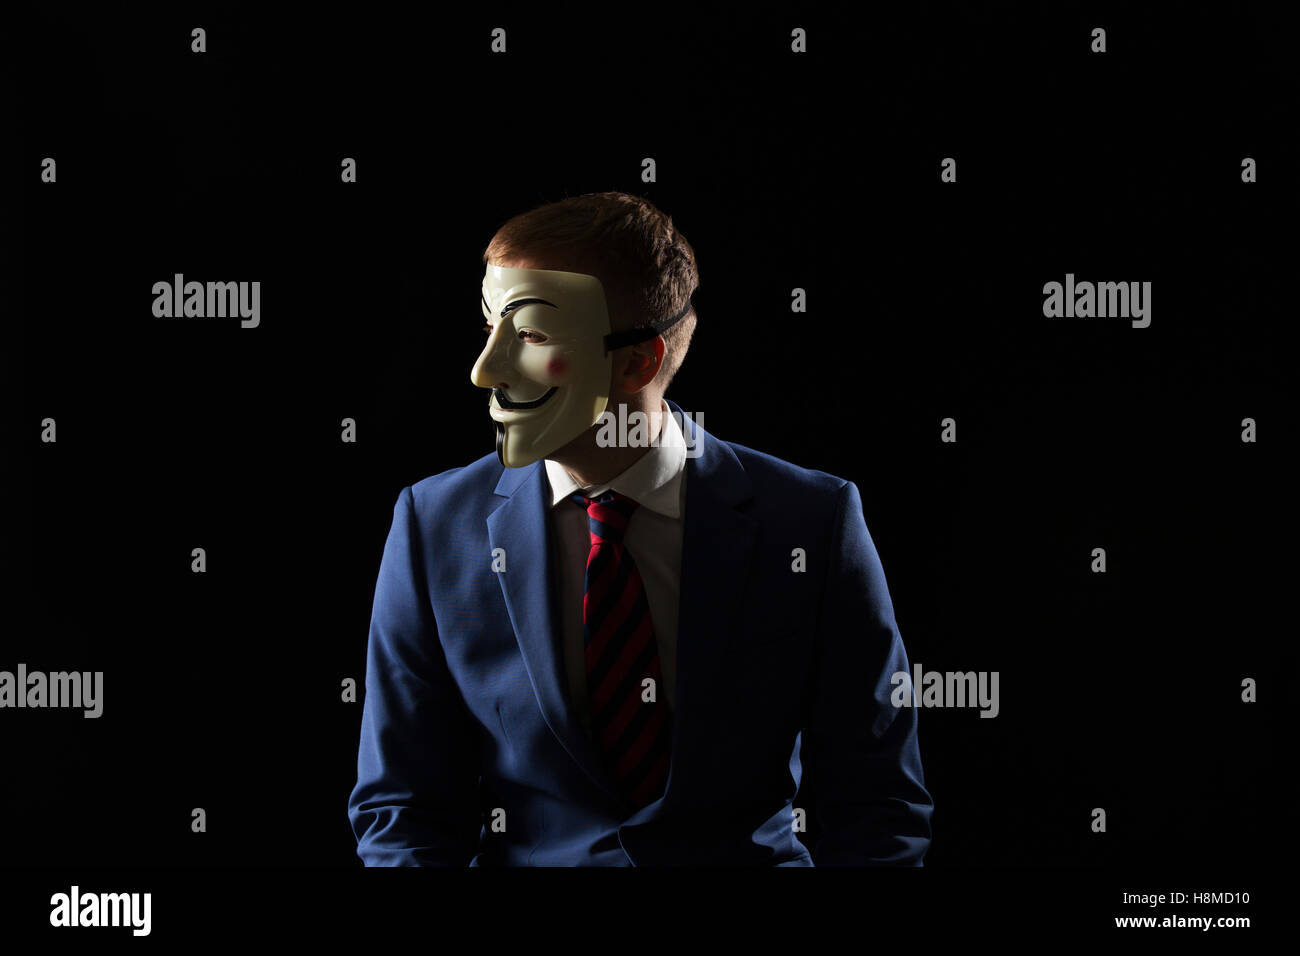 Uomo d'affari sotto la maschera travestimento essendo anonimo e che implica che egli è un hacker o anarchico Foto Stock